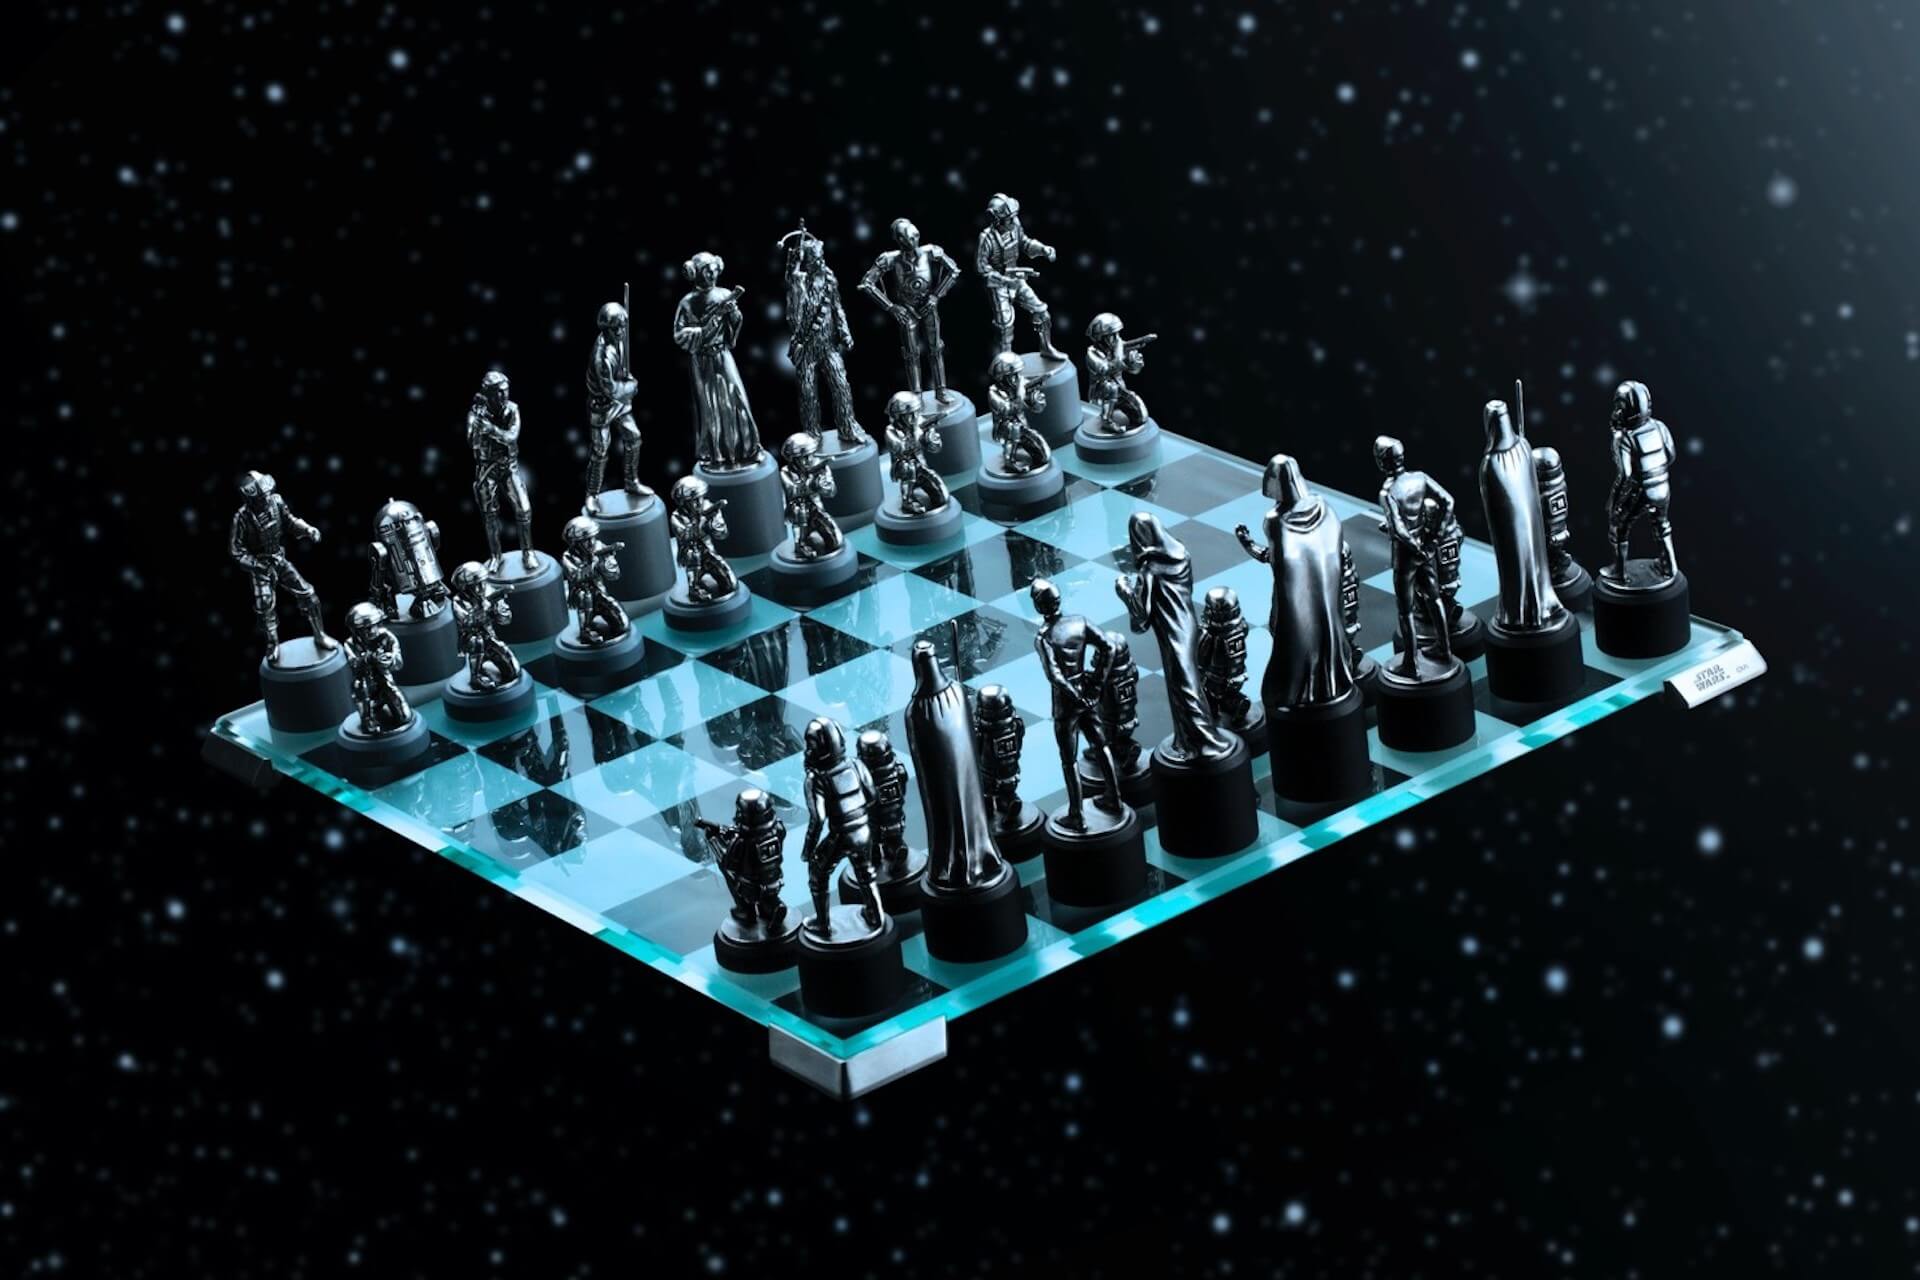 「スター・ウォーズ」シリーズのキャラクターがチェスの駒に！？高級感満載のクラシックチェスセットが発売決定 art191213_starwars_chess_9